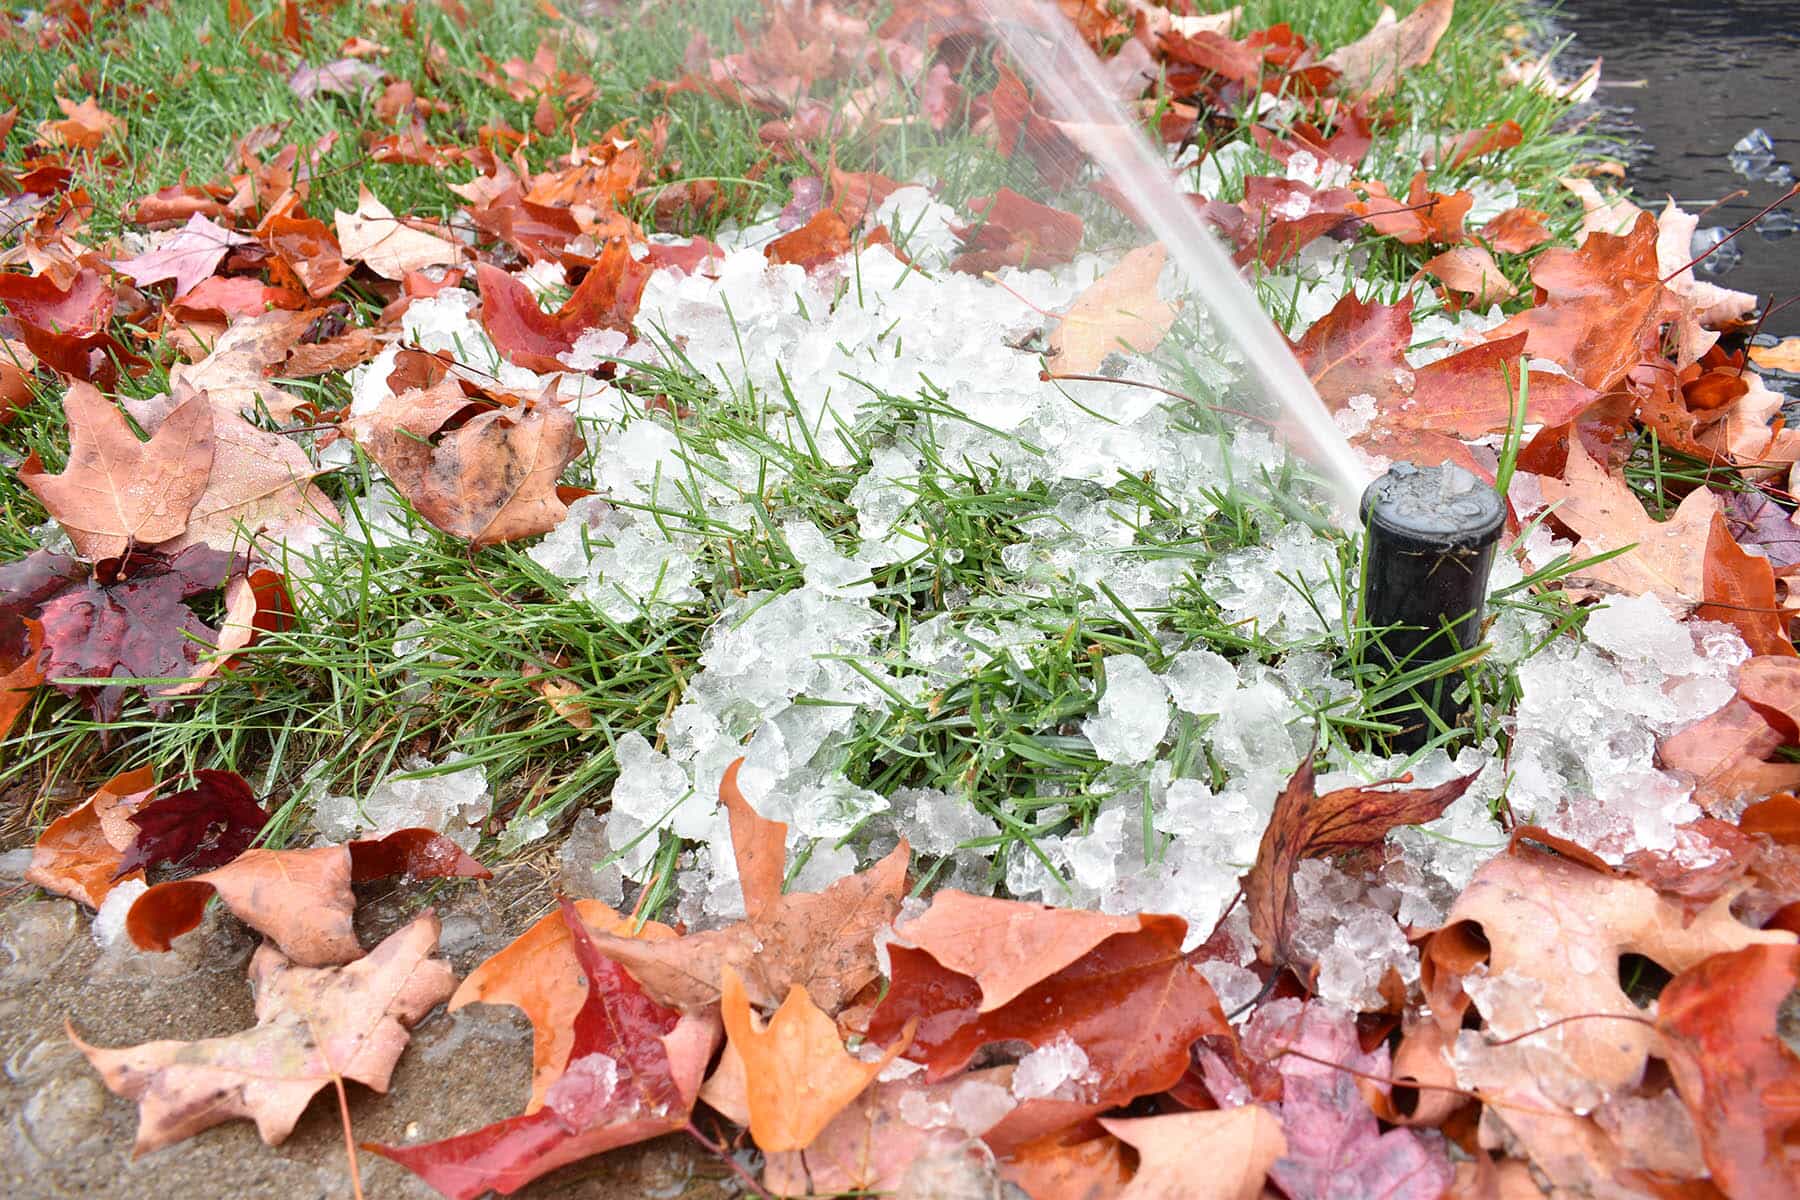 Marlboro irrigation winterization blowout